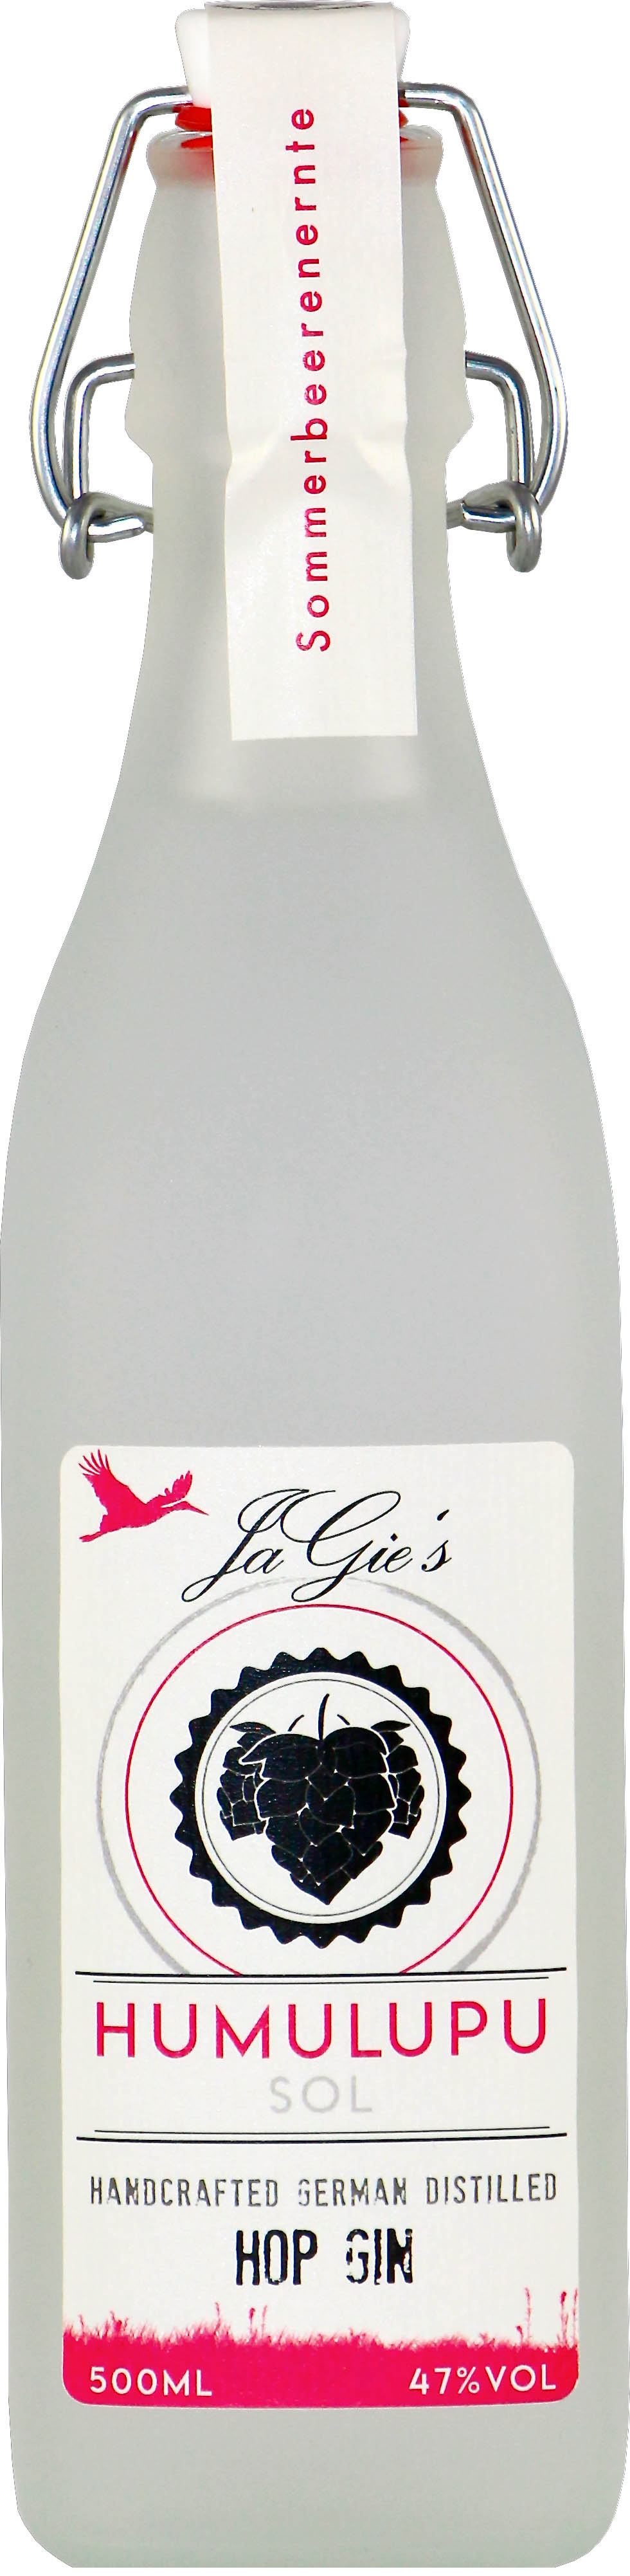 HUMULUPU Hop Gin (Sol) 500 ml (47% vol)